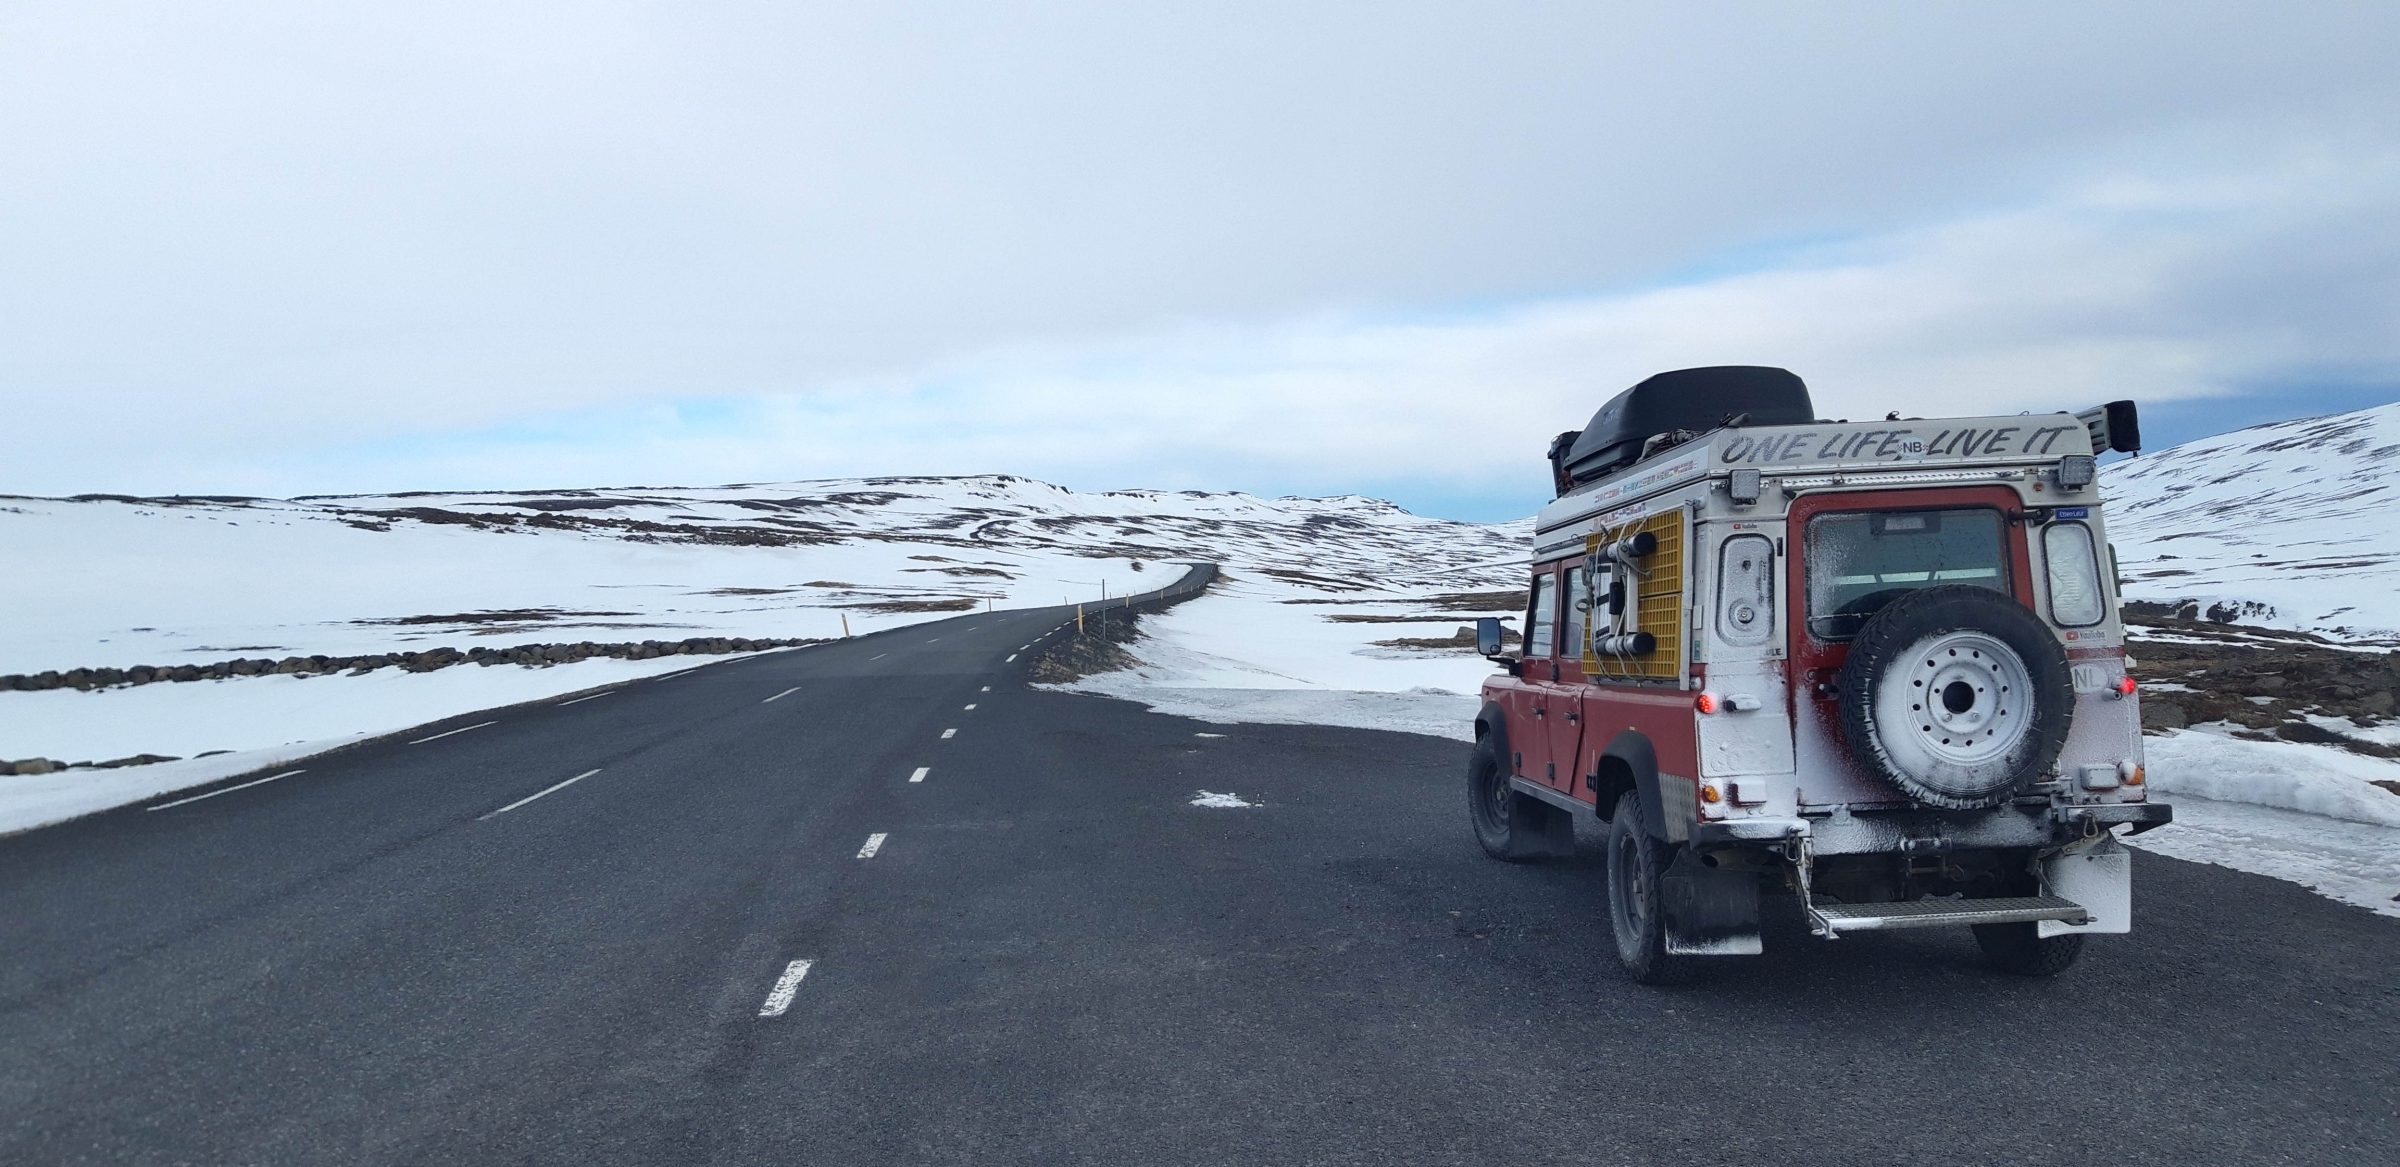 Giorno 2 in Islanda, una piccola tempesta di neve | Islanda e Isole Faroe in inverno